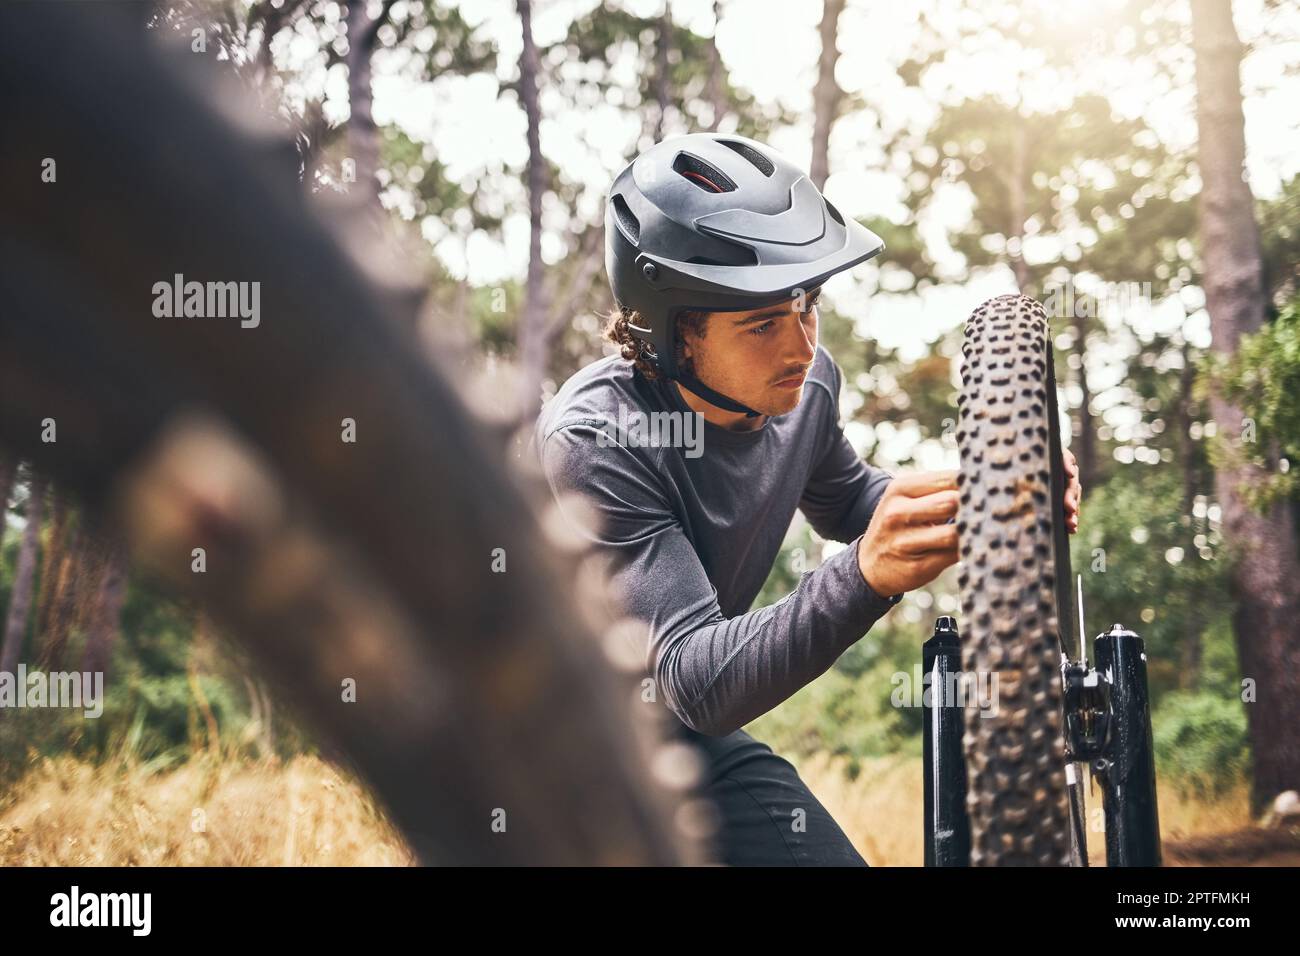 Radfahren, Abenteuerpfad und Fahrradreparatur, Mann repariert Rad im Wald. Natur, Mountainbiking und Radfahrer, Radsport im Freien in Australien. Bicyclin Stockfoto